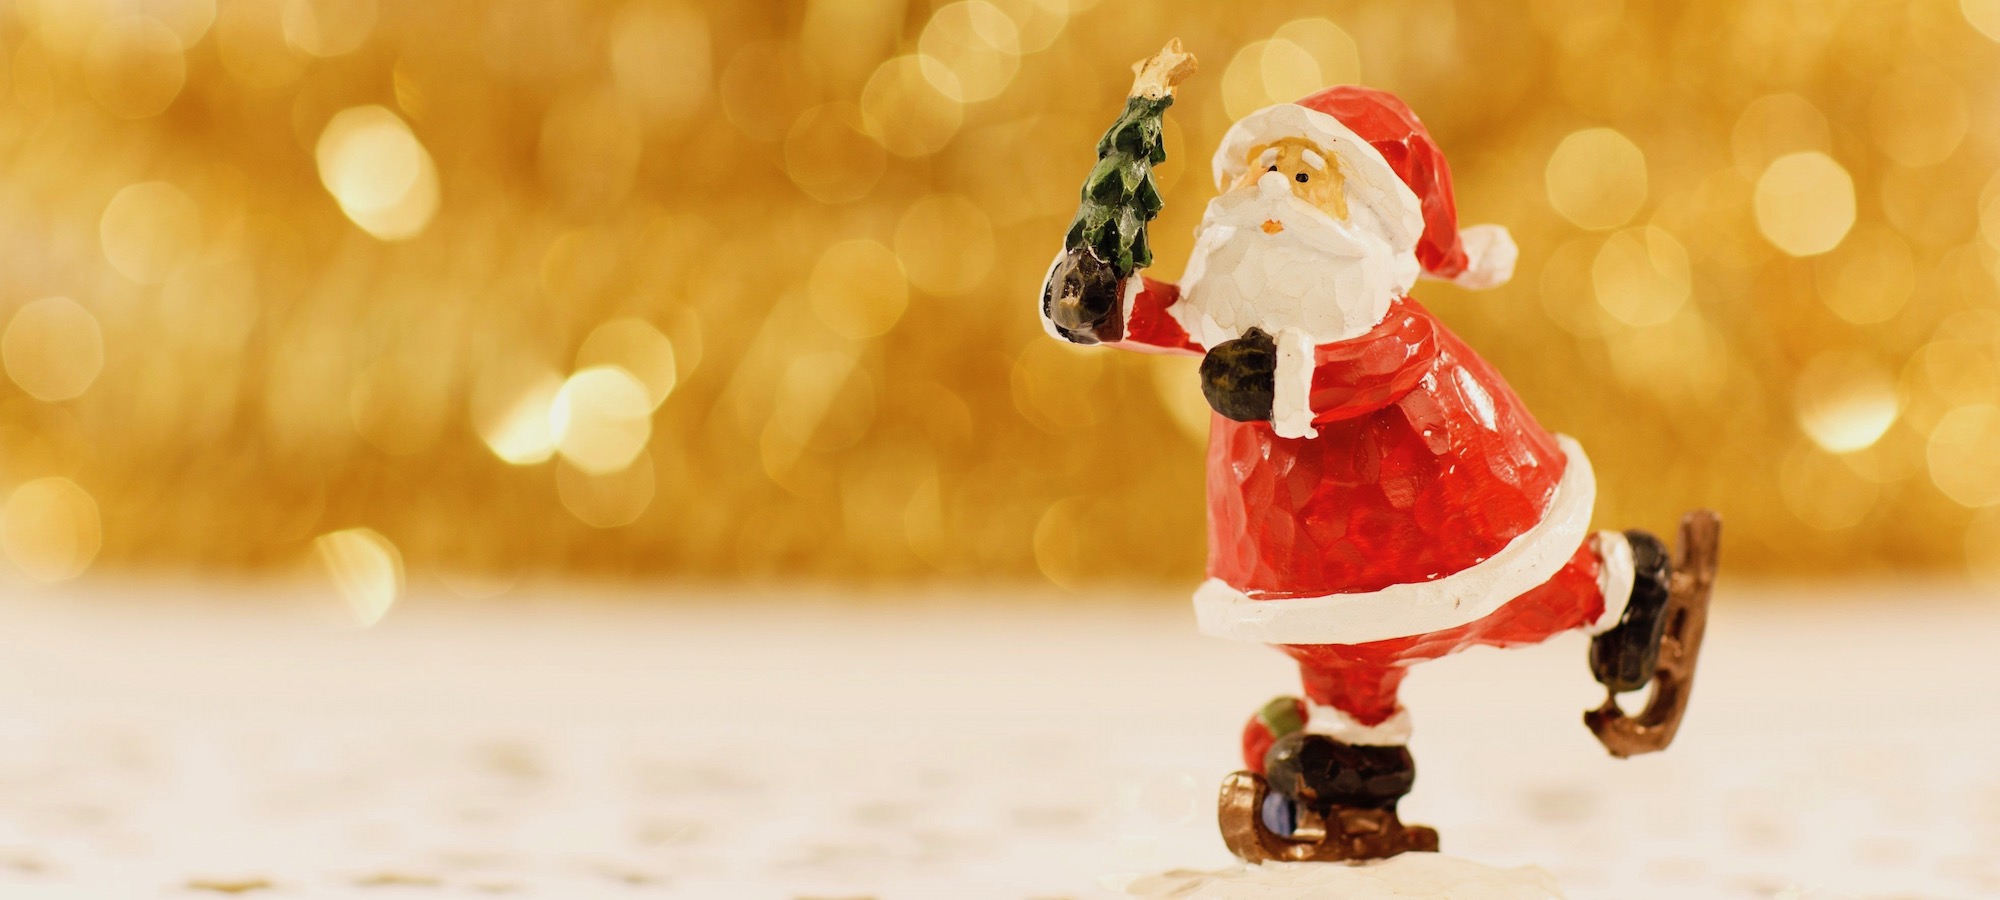 Santa Clause Figur auf Schlittschuhen mit Weihnachtsbäumchen